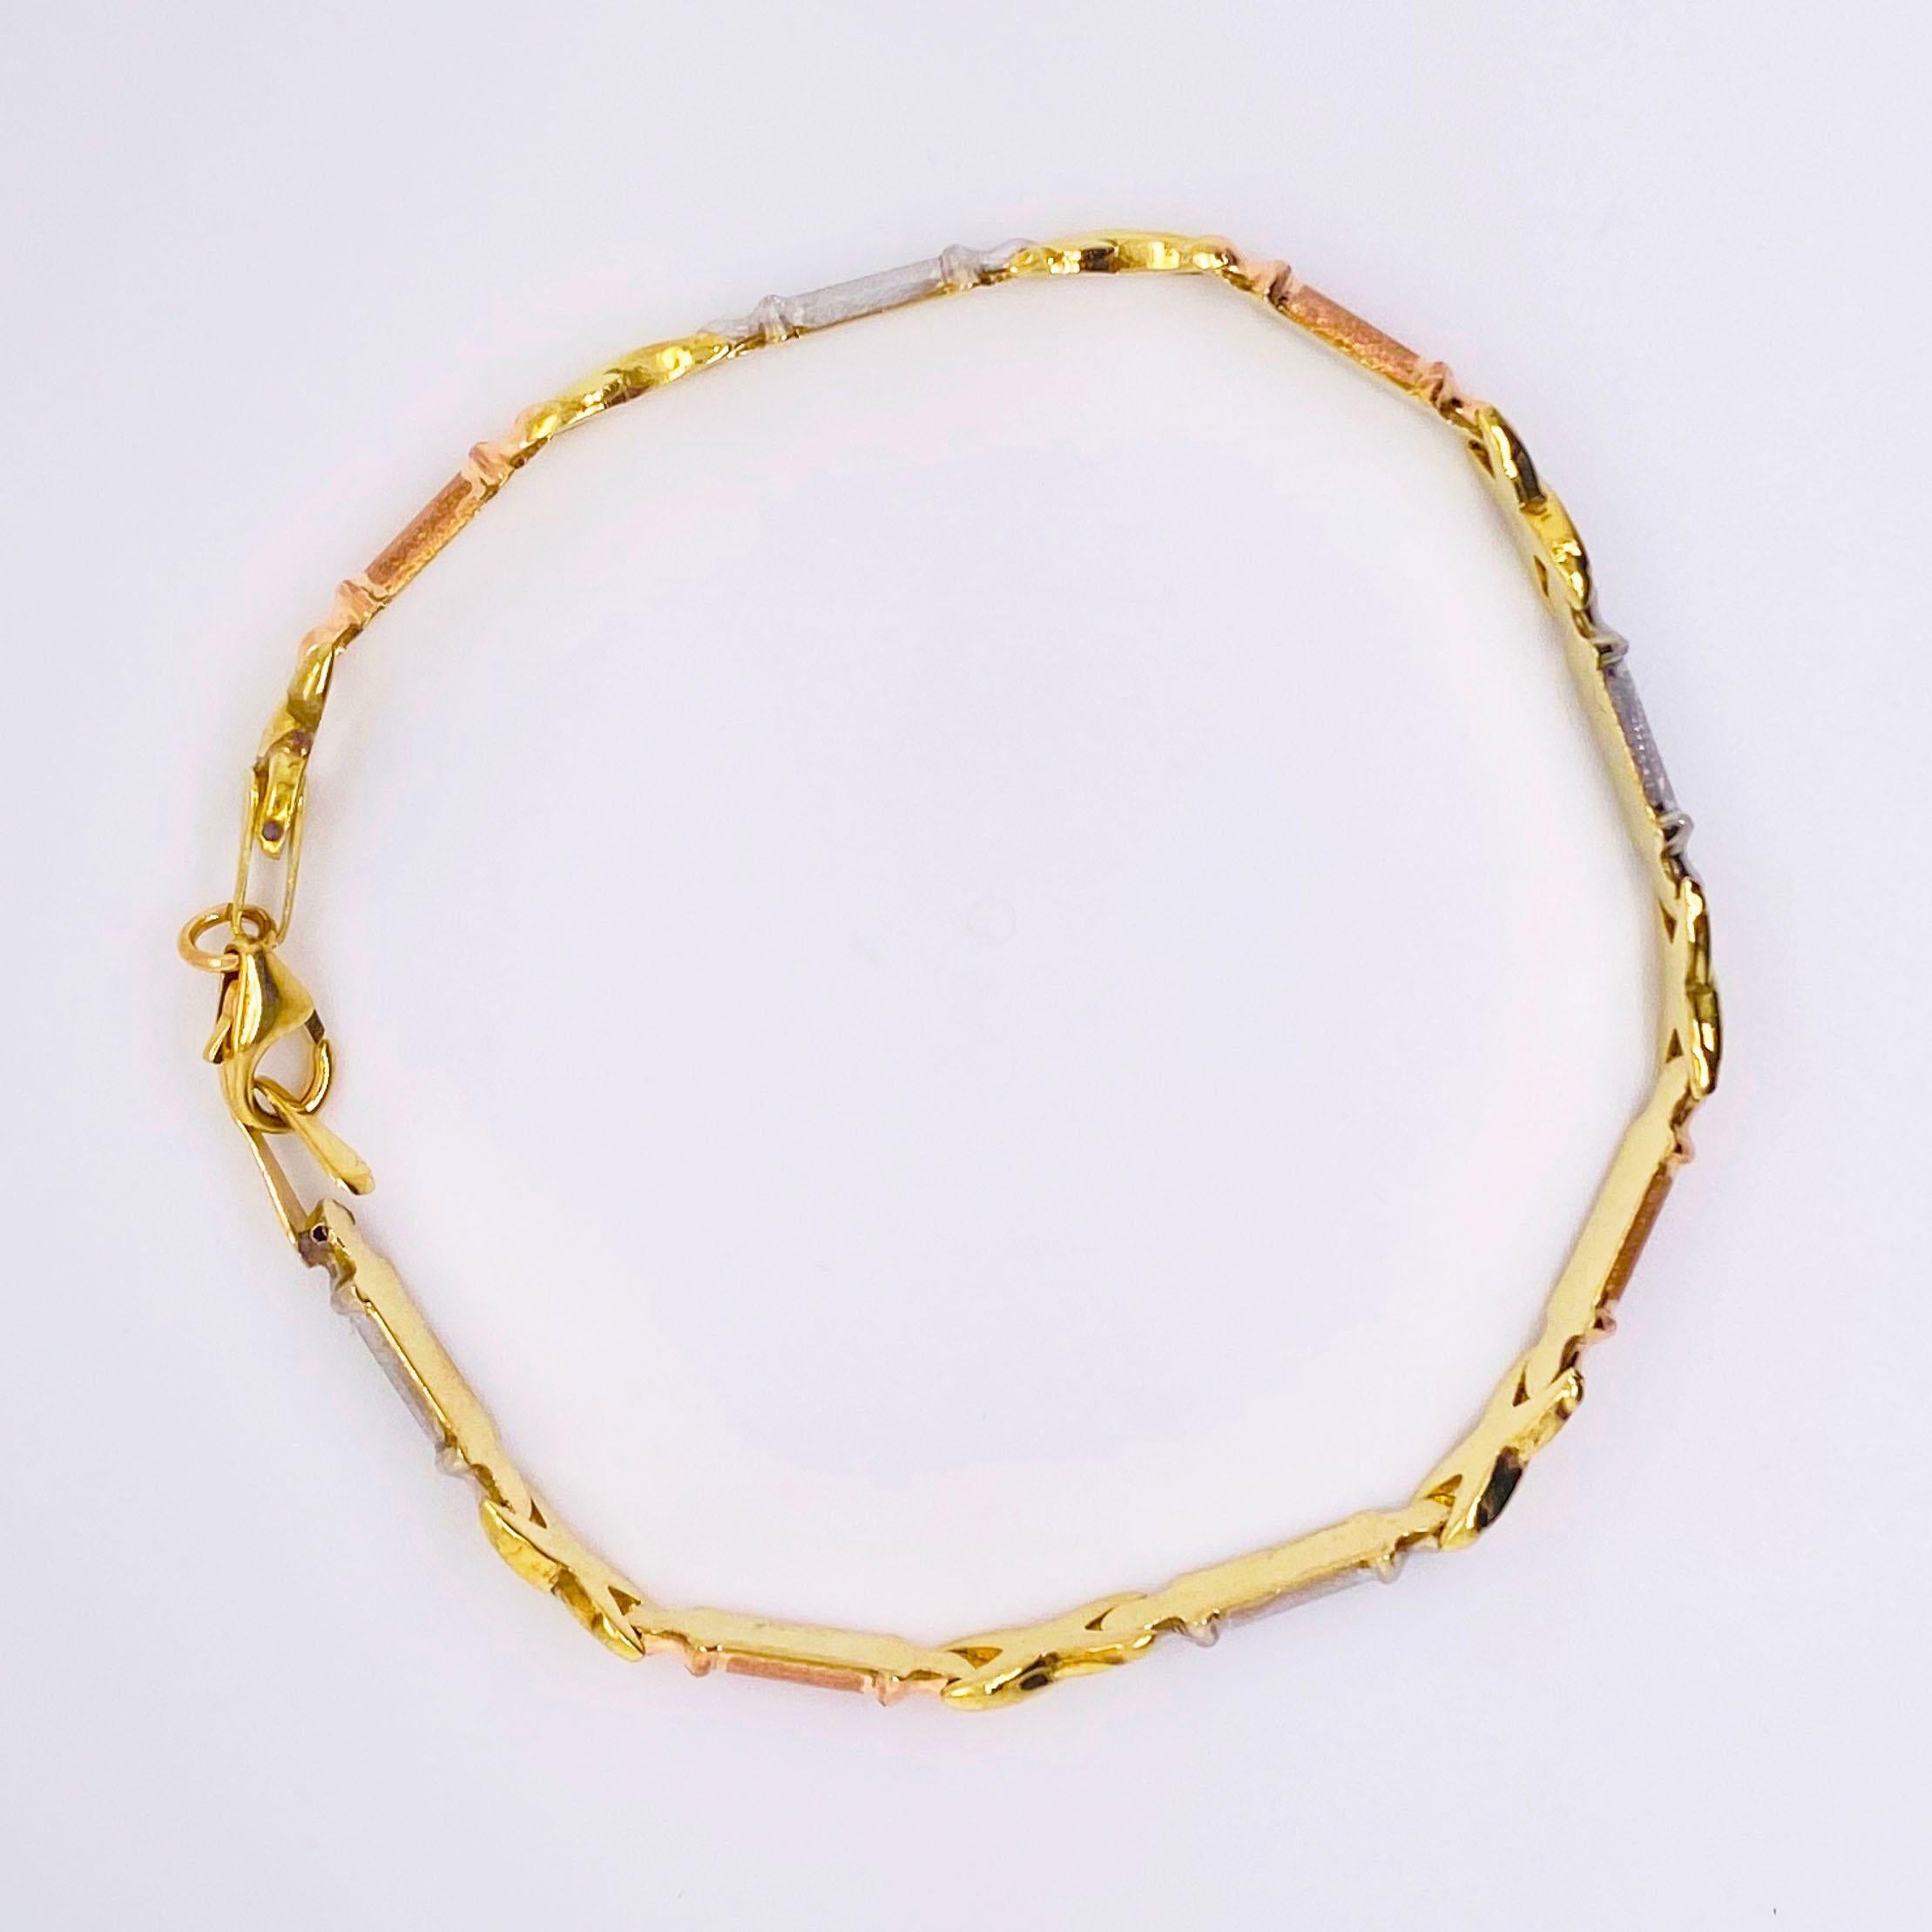 Ce magnifique bracelet en or tricolore est fabriqué à la main avec de l'or 10 carats. Chaque maillon est alterné dans un motif unique d'or blanc, d'or jaune, d'or rose, d'or jaune, etc. L'or multicolore permet à ce bracelet de s'adapter à toutes les